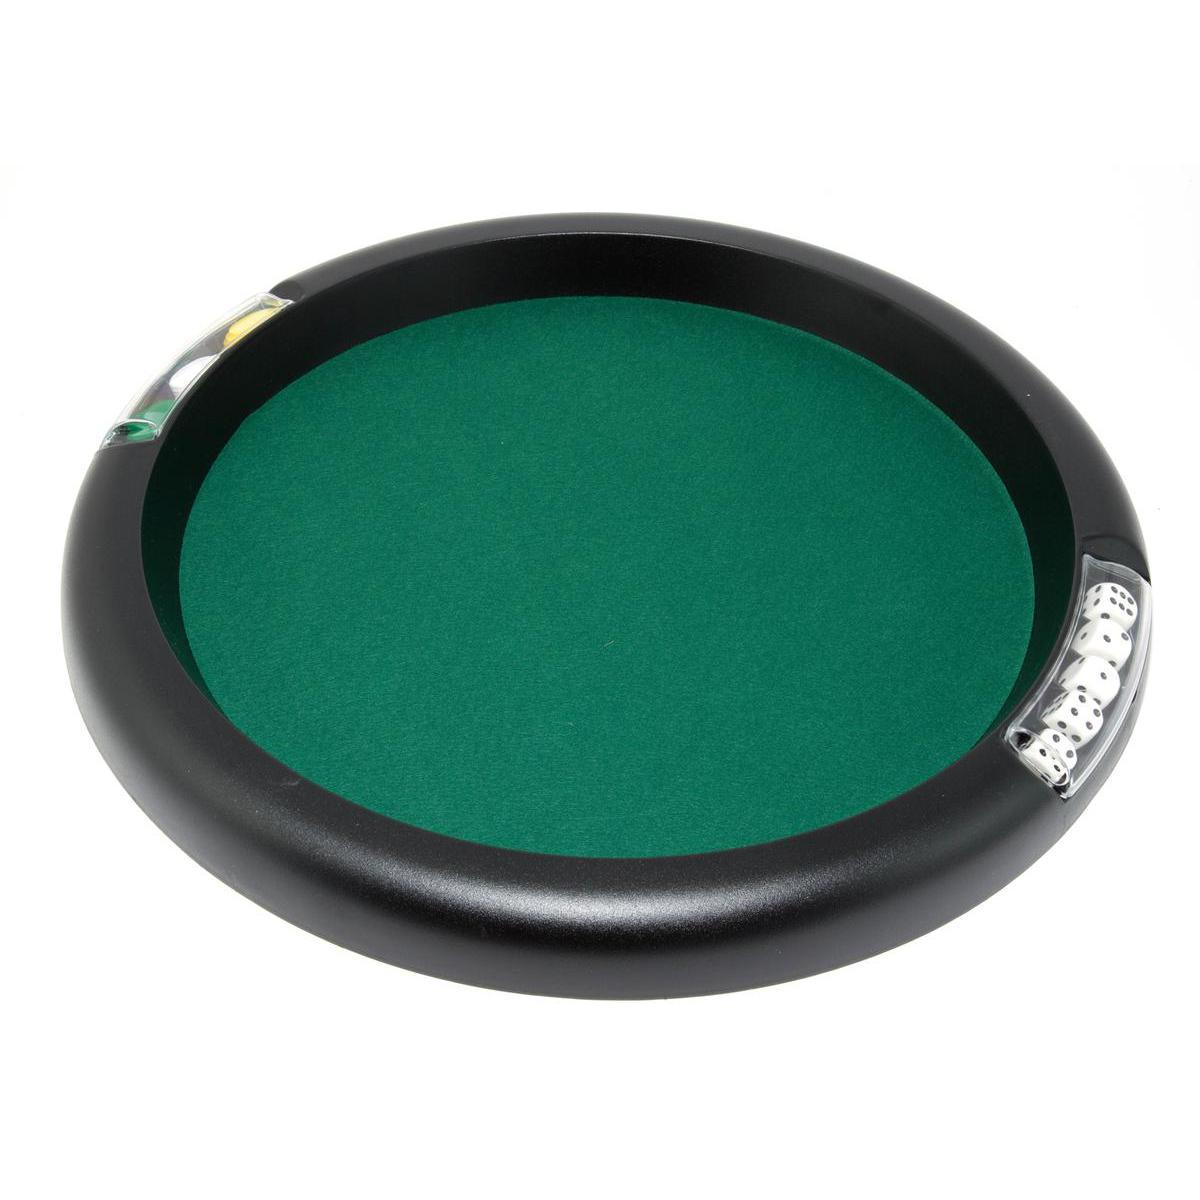 Piste à dés - Feutre et plastique - Diamètre 33 cm - Vert et noir